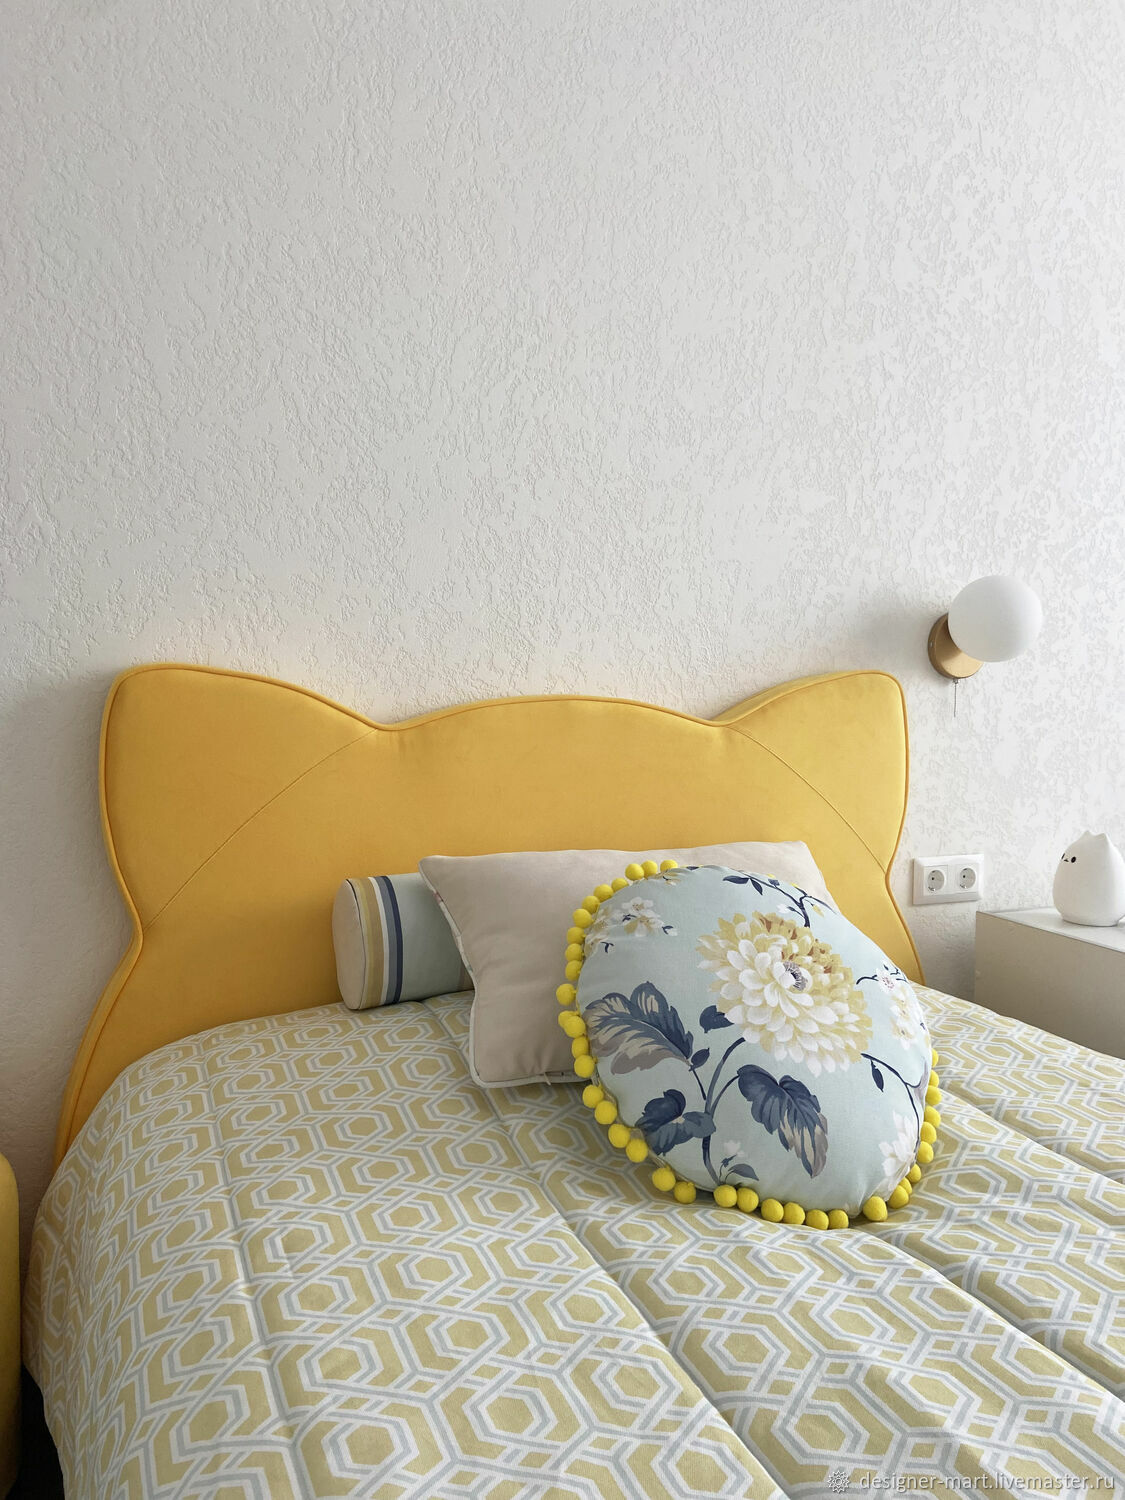 Желтое покрывало на кровать в интерьере